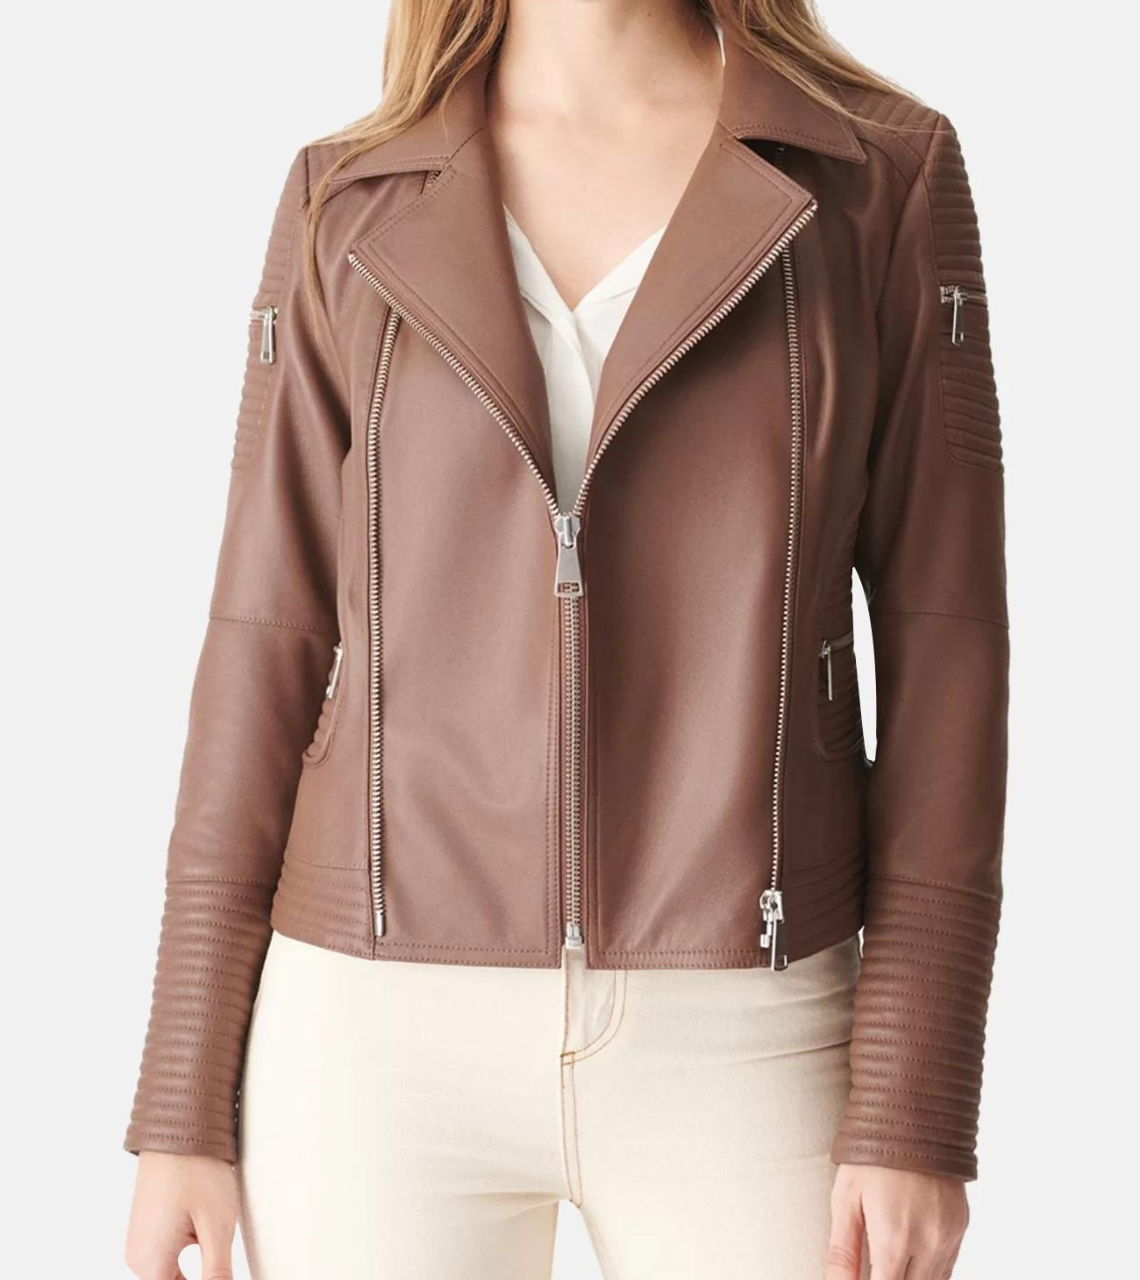 Women's Tan Brown Biker Leather Jacket